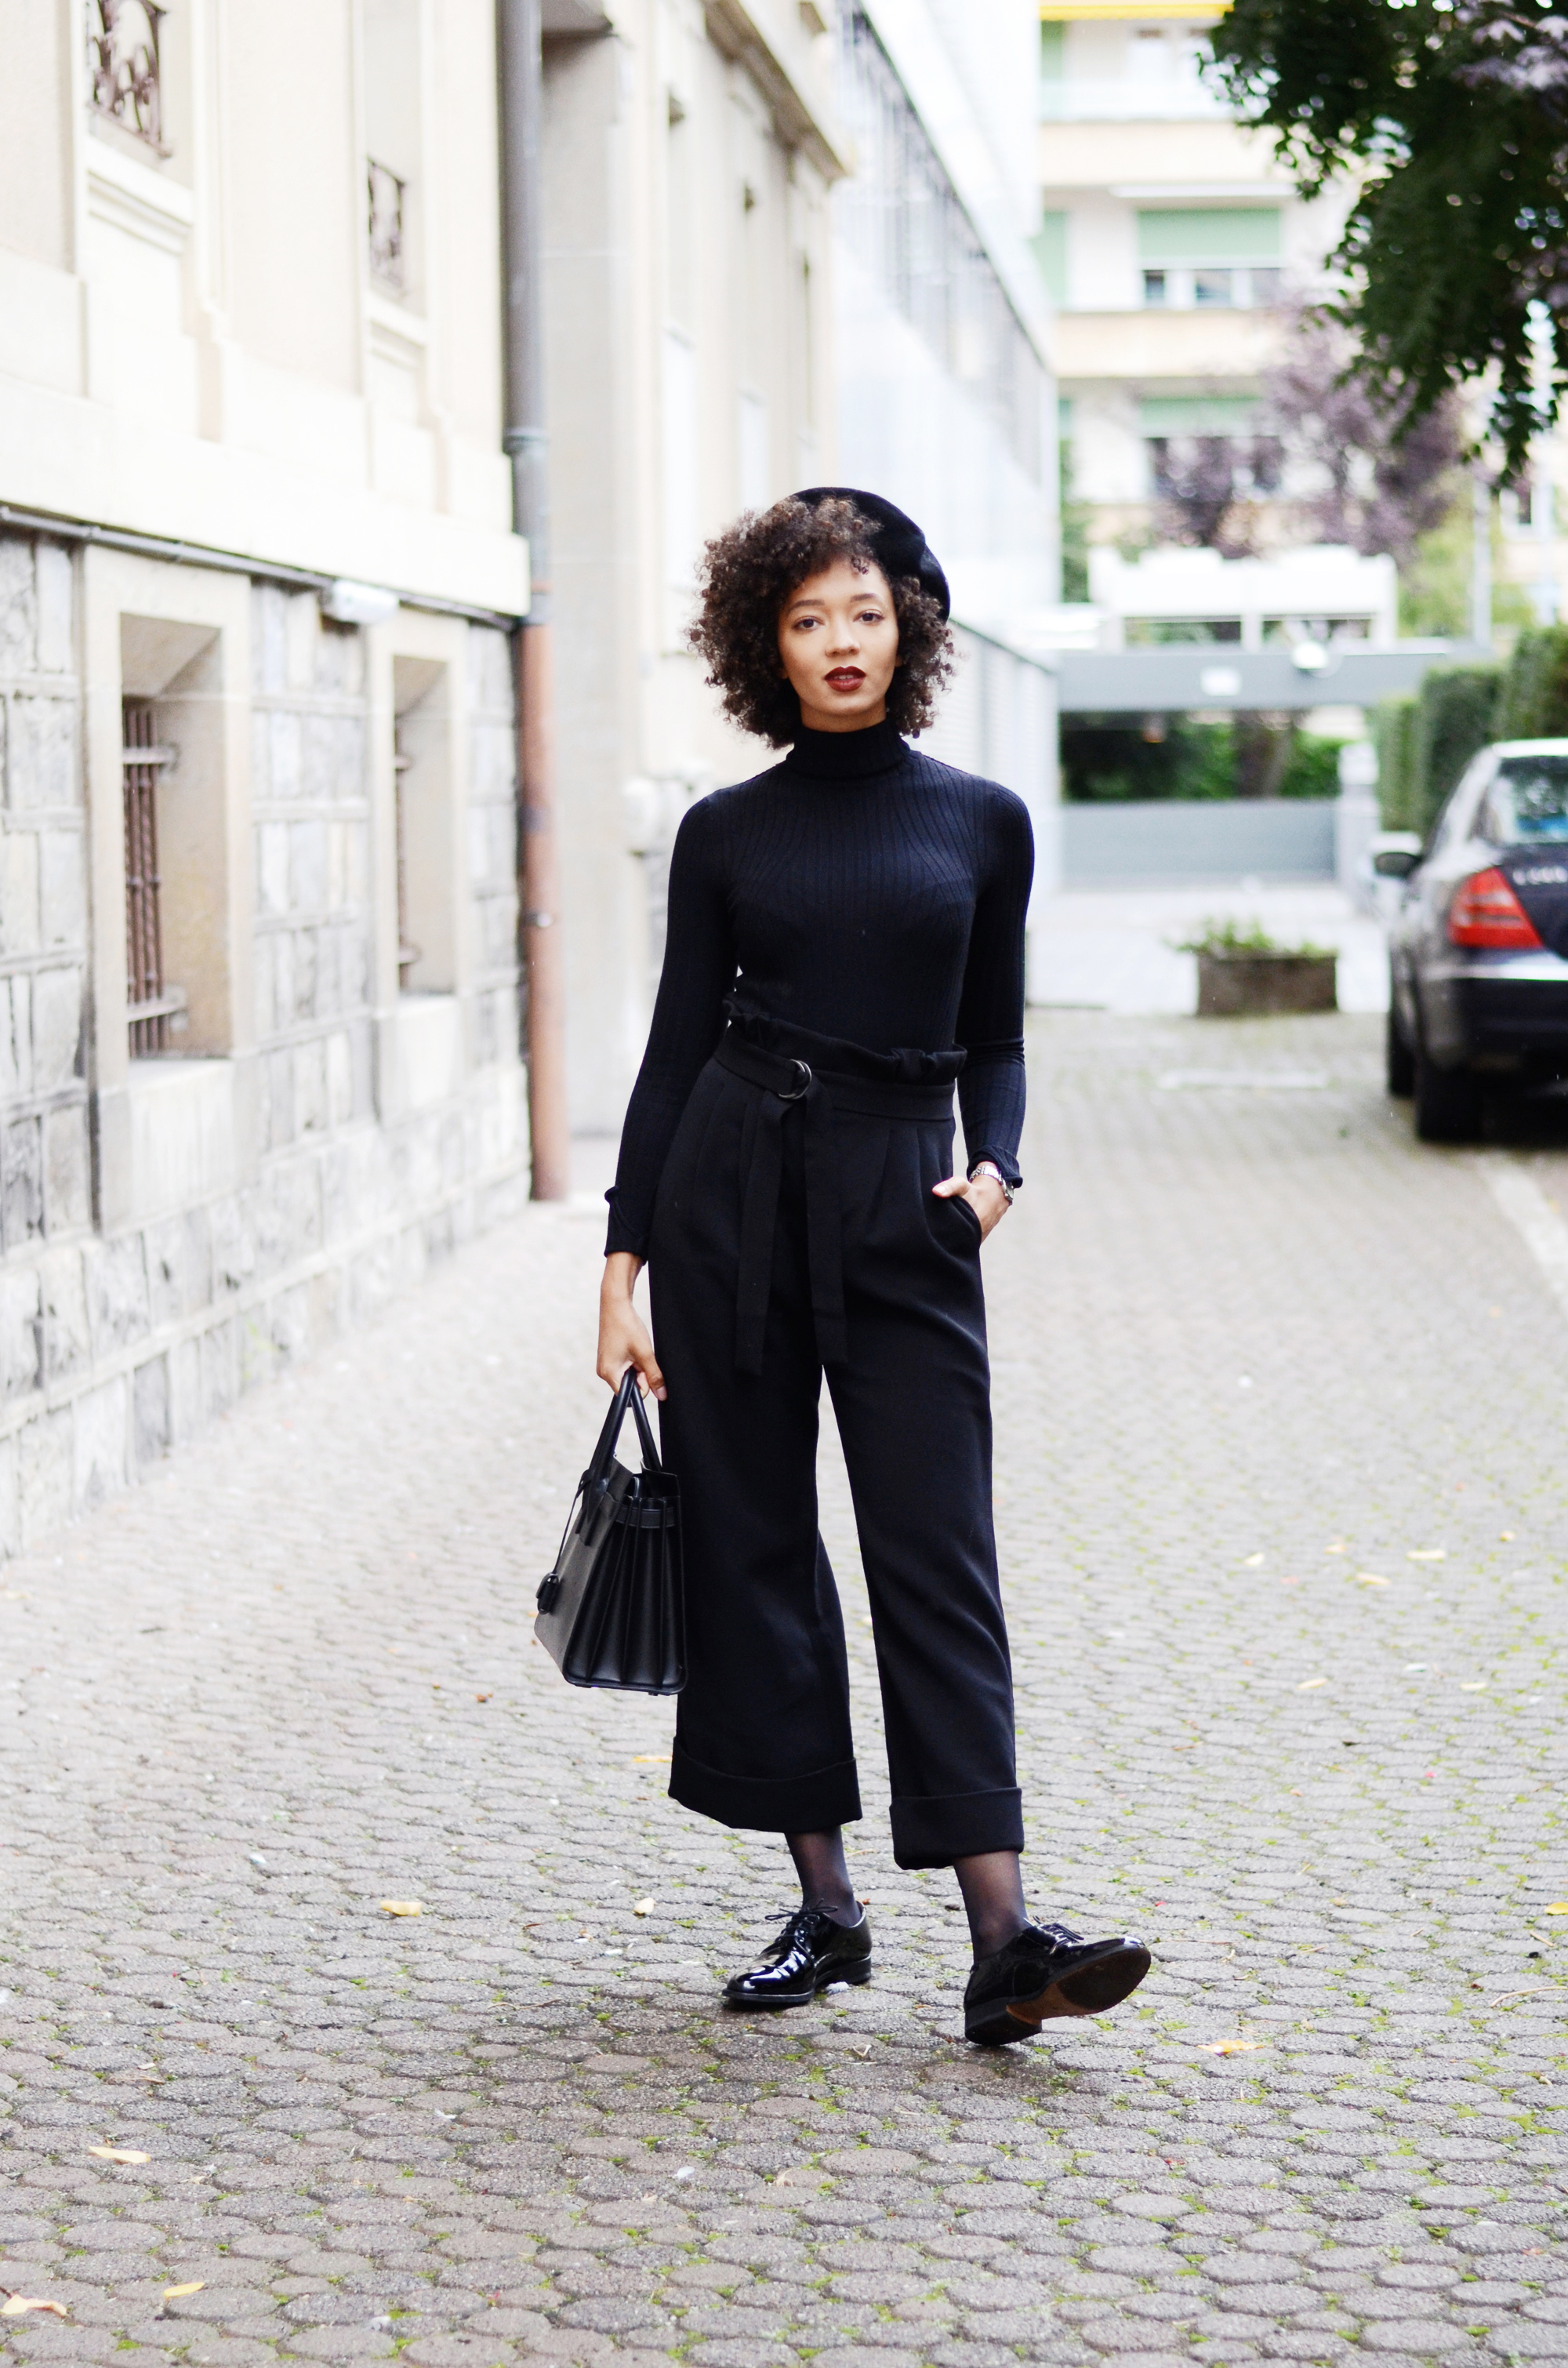 mercredie-blog-mode-geneve-suisse-fashion-blogger-all-black-outfit-chic-saint-laurent-sac-de-jour-black-matte-derbies-vernies-shoepassion-102-afro-beret